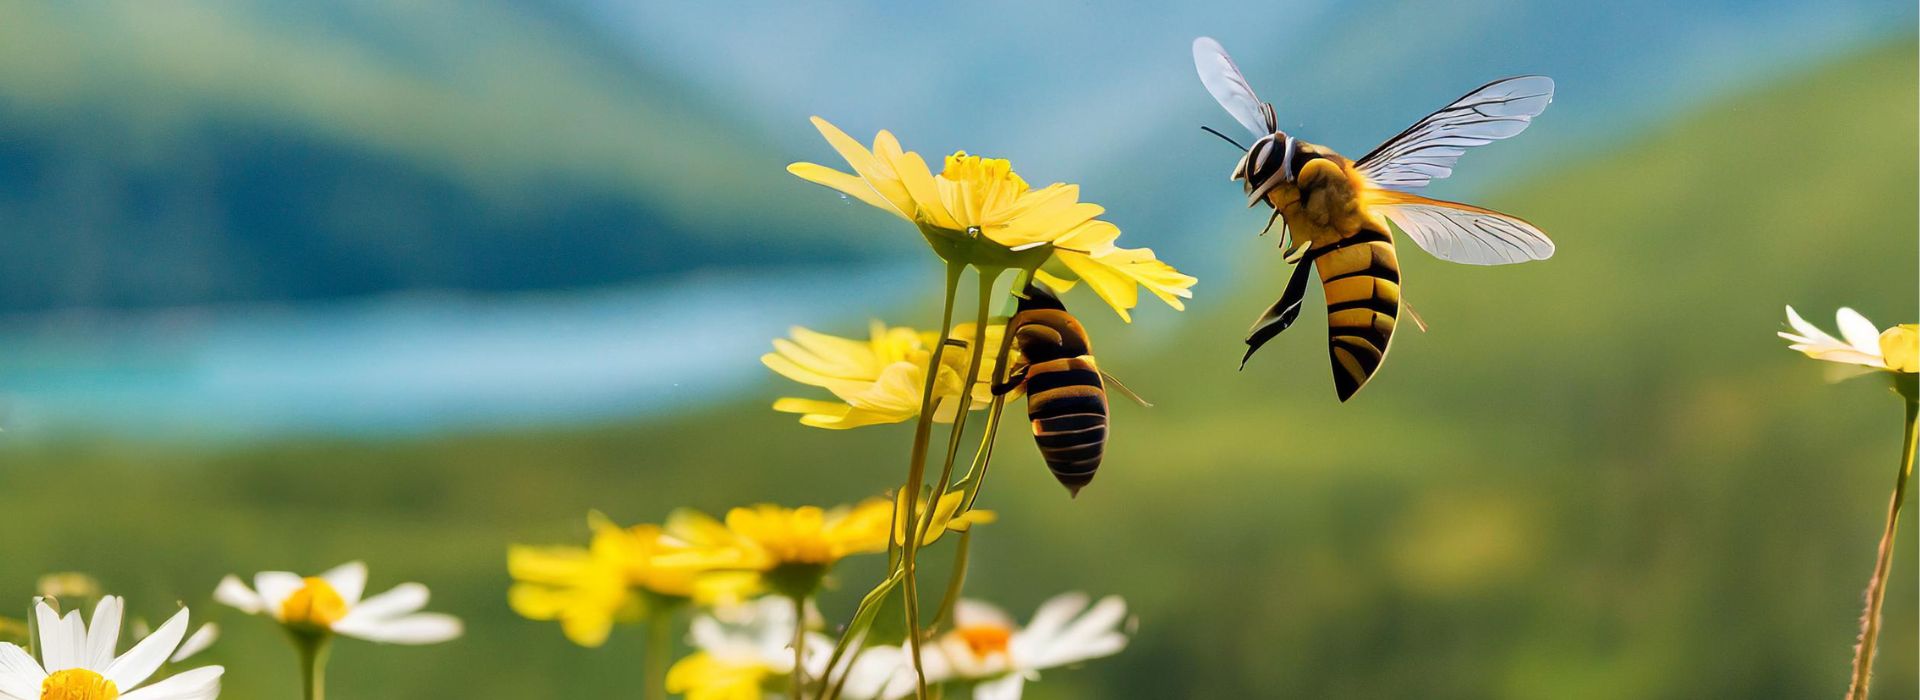 Bienen schnuppern an einer Blume